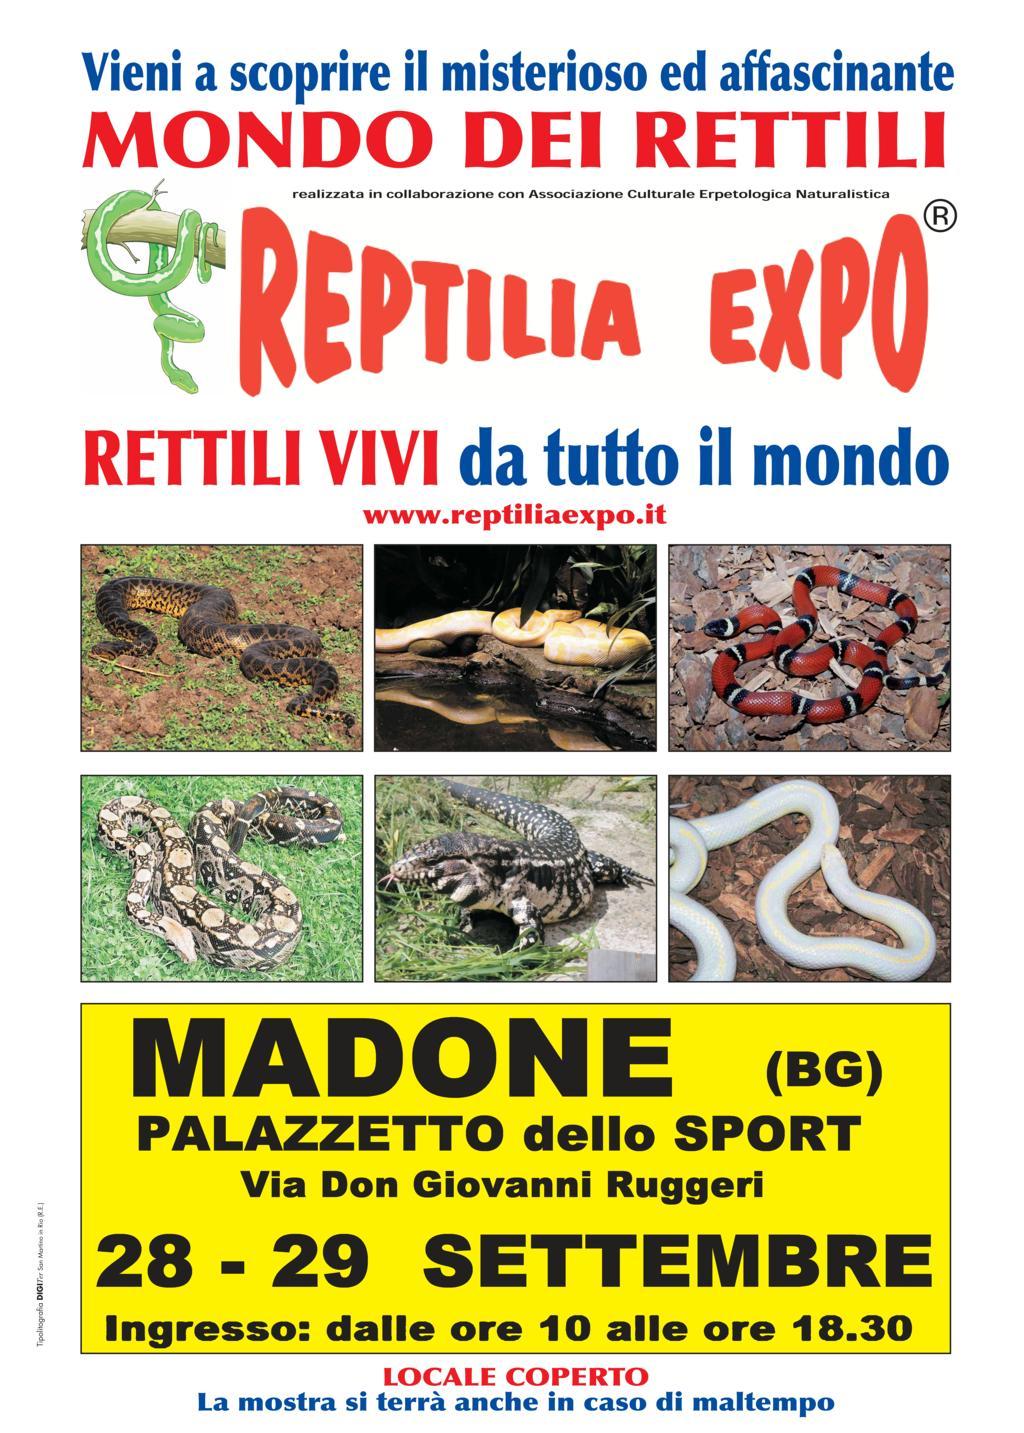 Foto 3 - I Gatti Più Belli del Mondo, per la prima volta, al Palazzetto dello Sport di Madone (Bergamo)